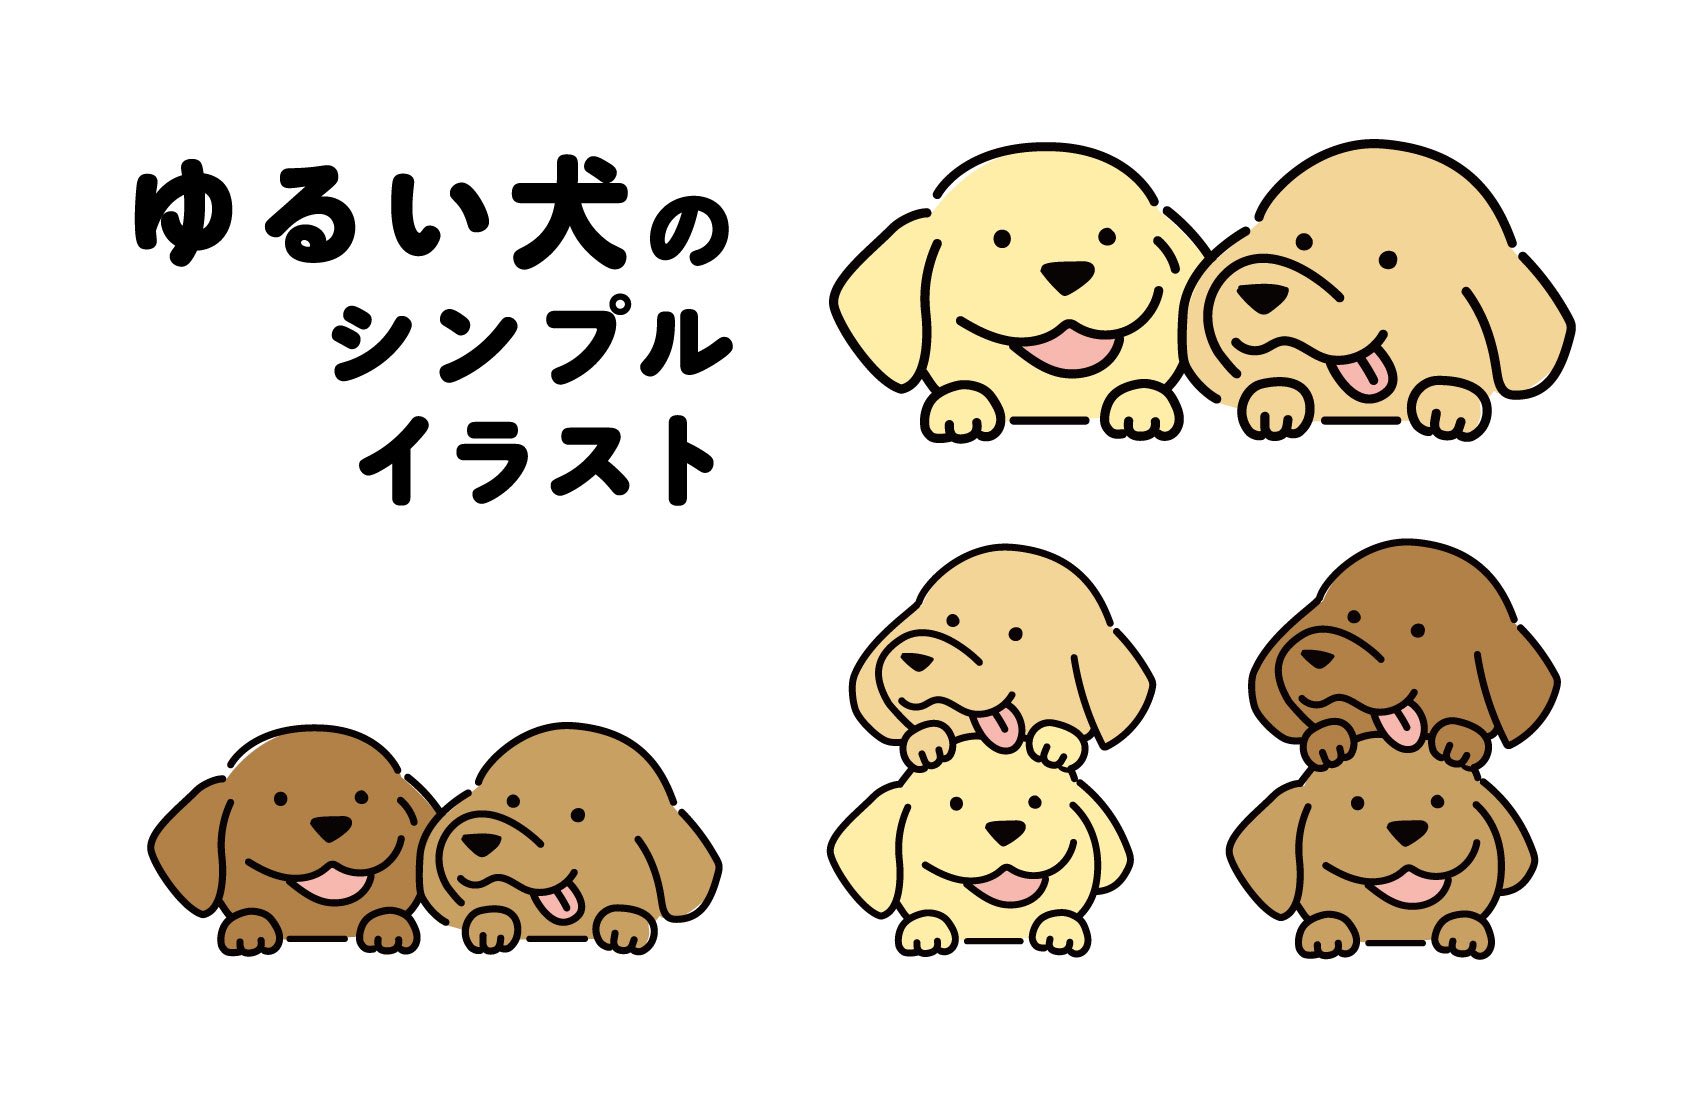 ヤマオユミ Sakuma Records グラフィックデザイナー ゆる い犬のシンプルなイラストをアップしました ダウンロードはこちらから T Co Wwjunxv2ww イラストac 無料素材 商用フリー 犬のイラスト T Co Lm5x3tfdsl Twitter